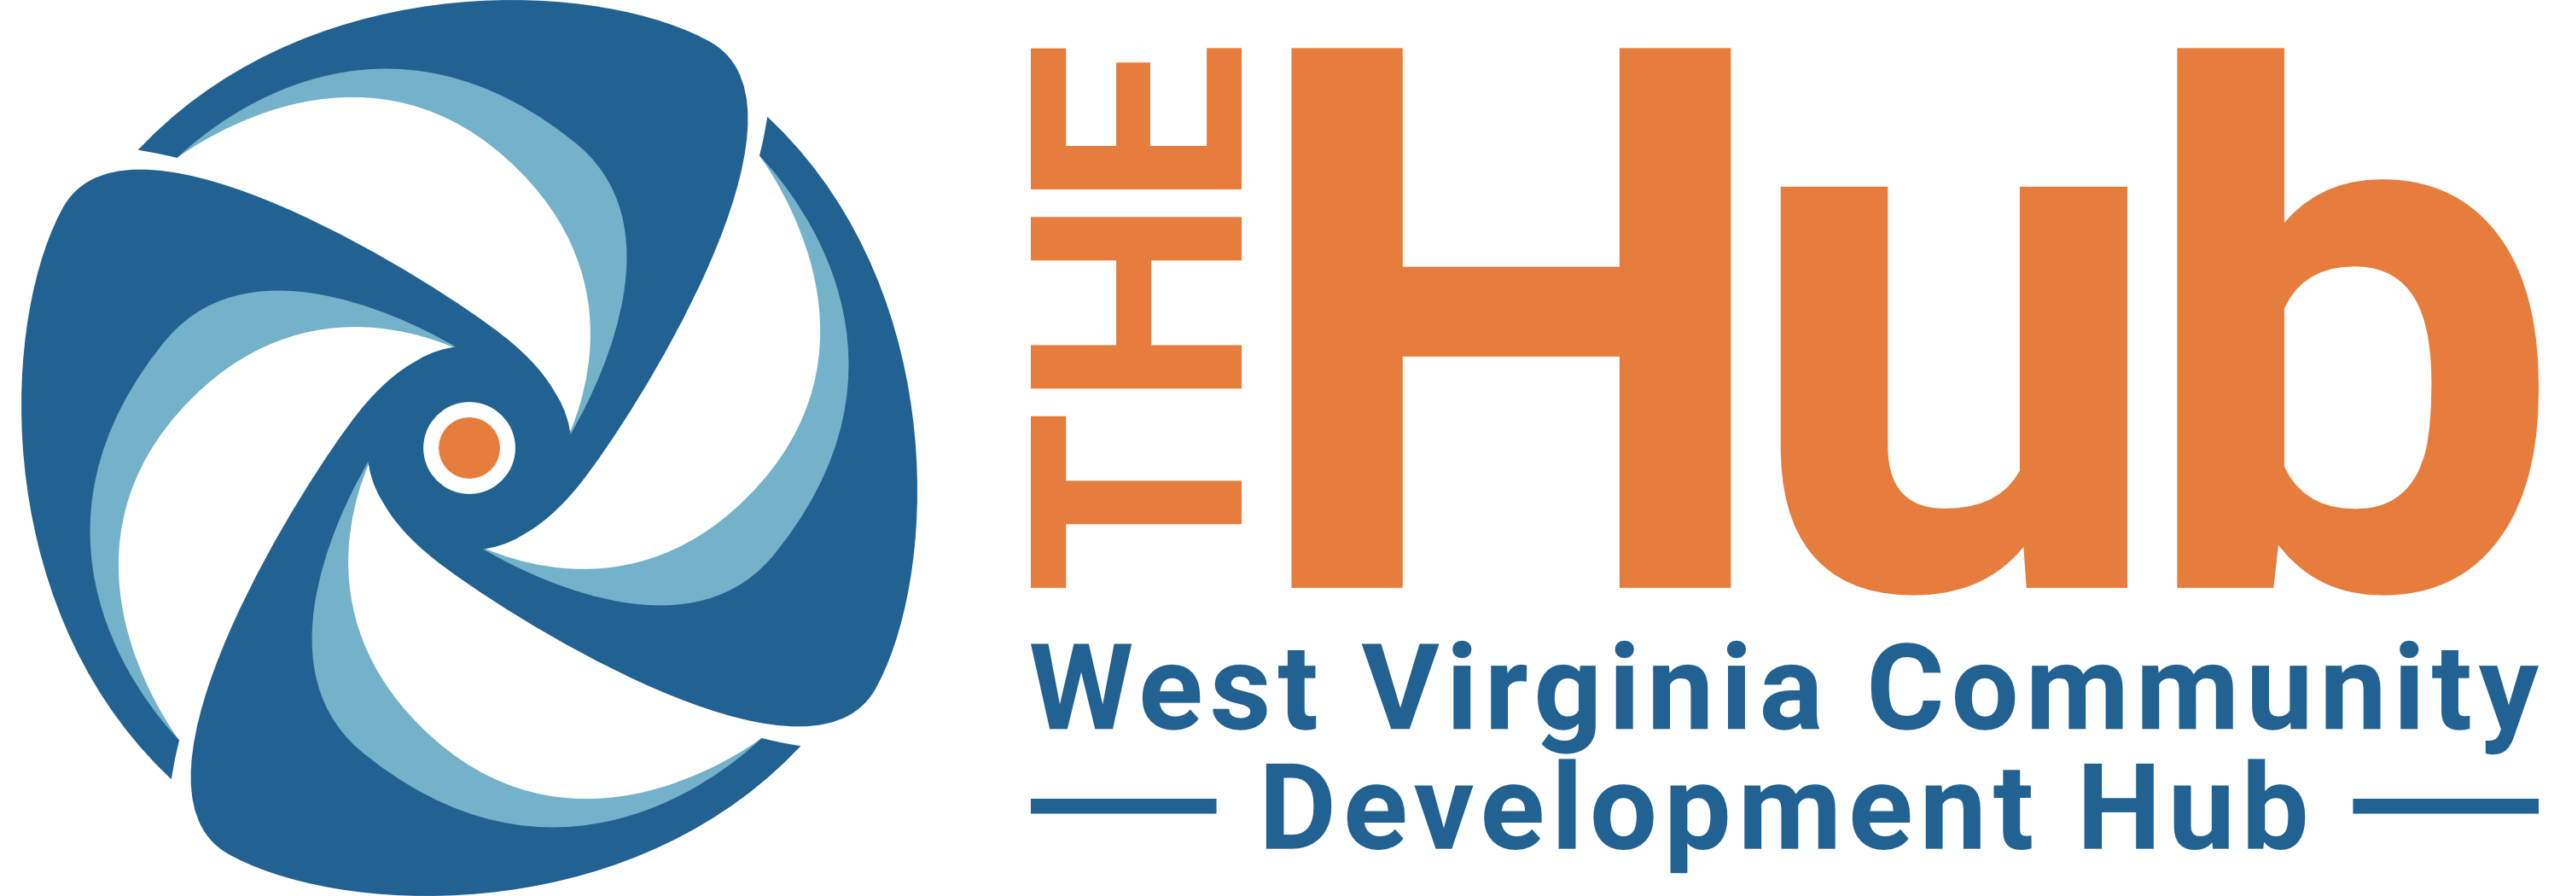 WV Comm Dev Hub Logo